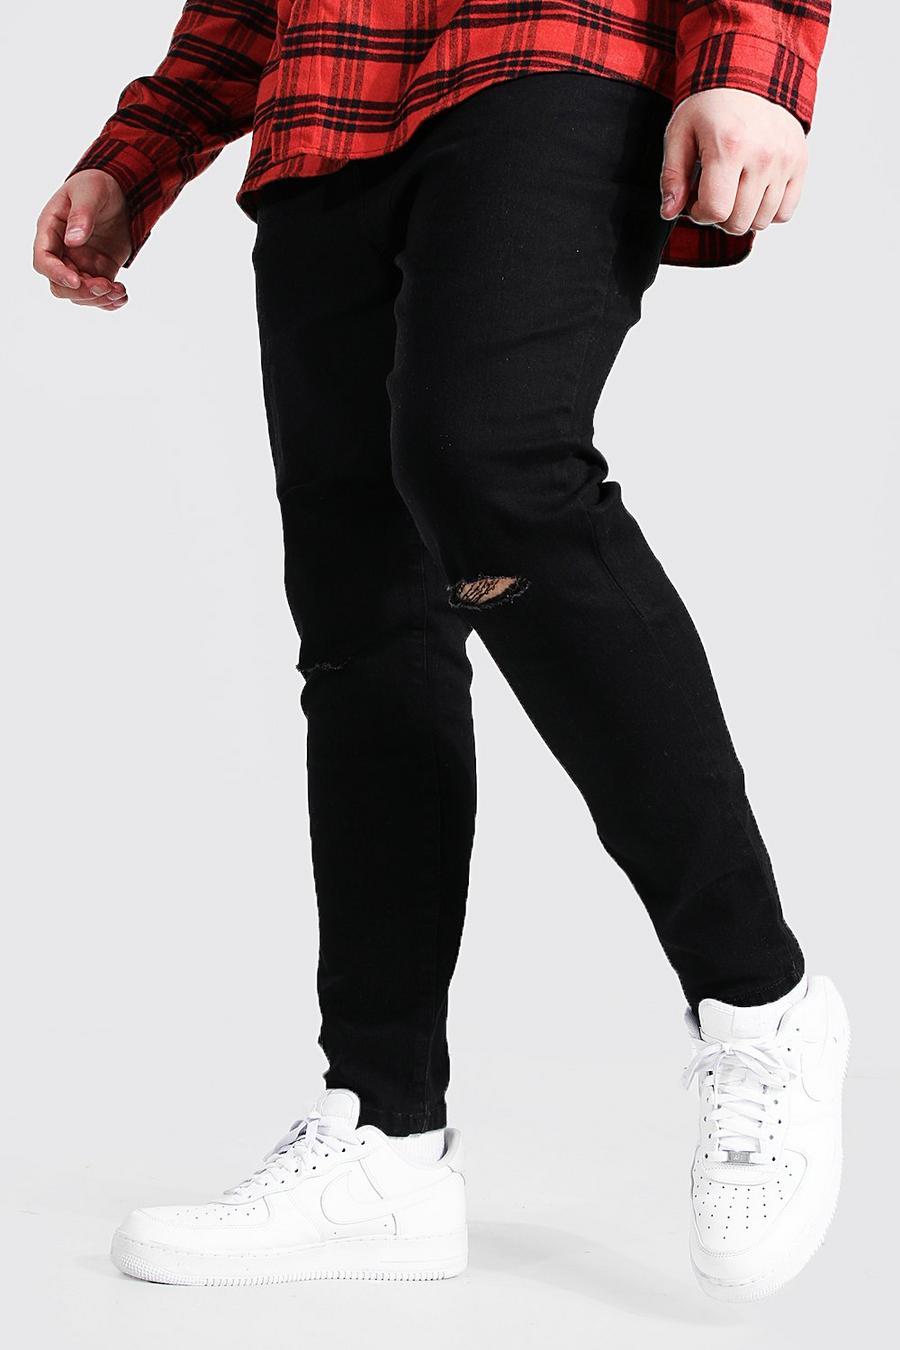 שחור negro סופר סקיני ג'ינס עם חריצים בברכיים לגברים גדולים וגבוהים